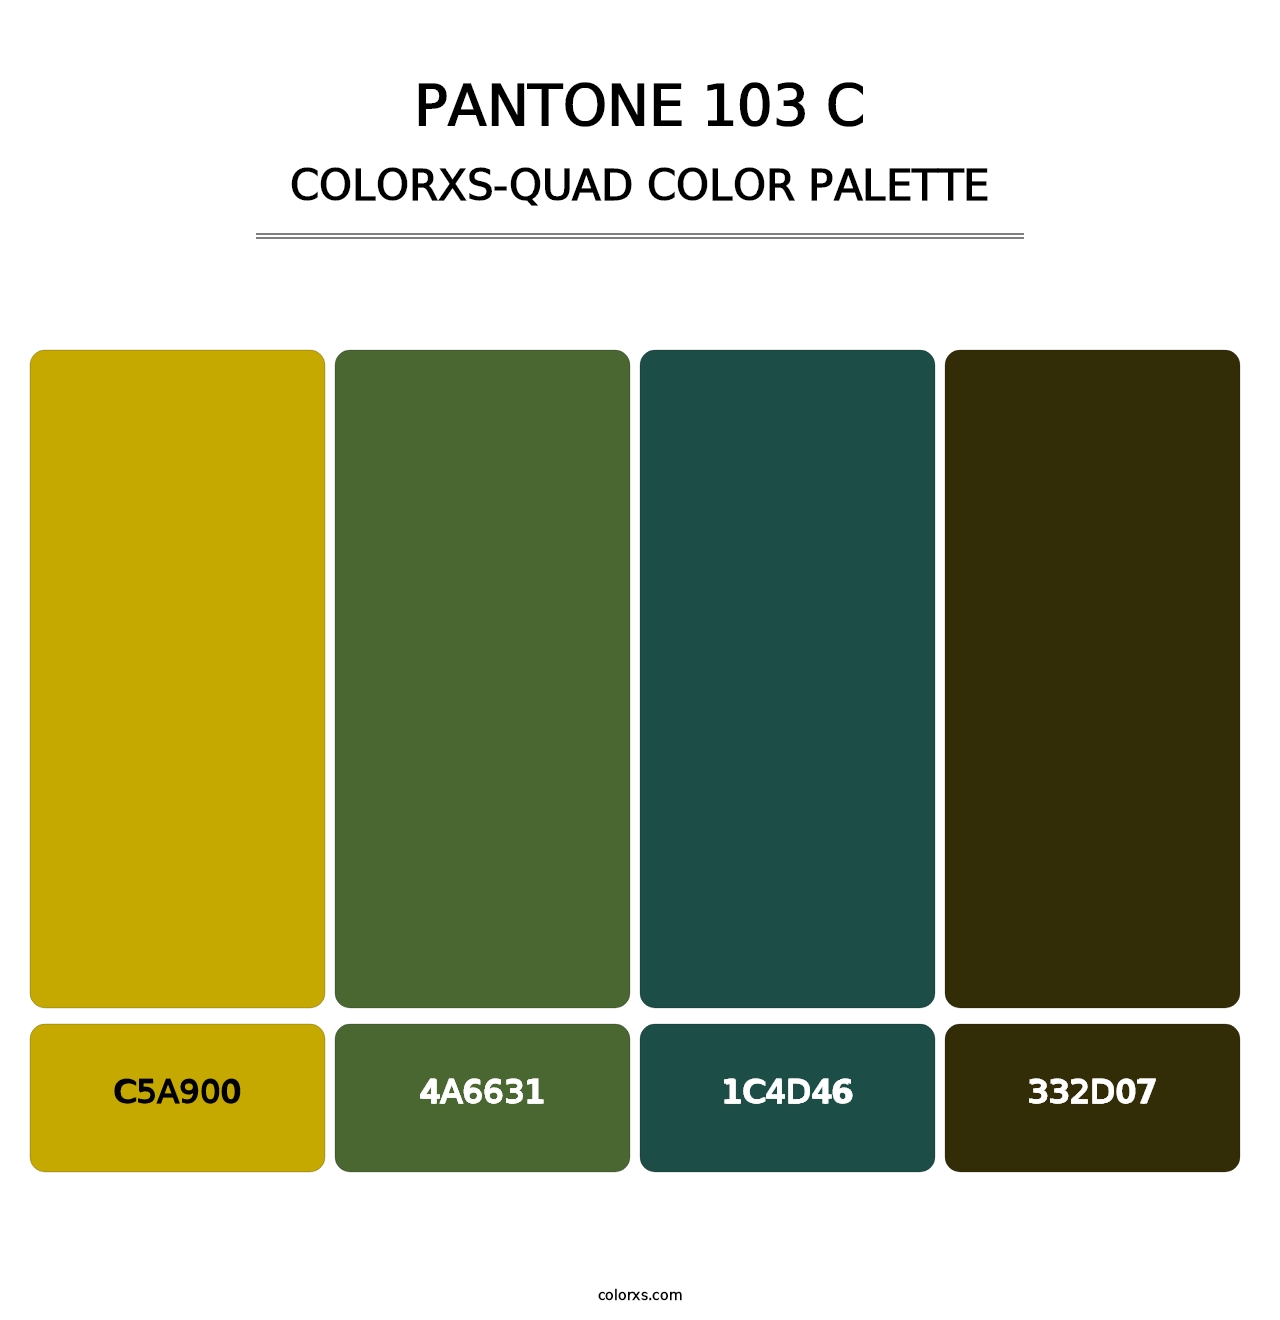 PANTONE 103 C - Colorxs Quad Palette